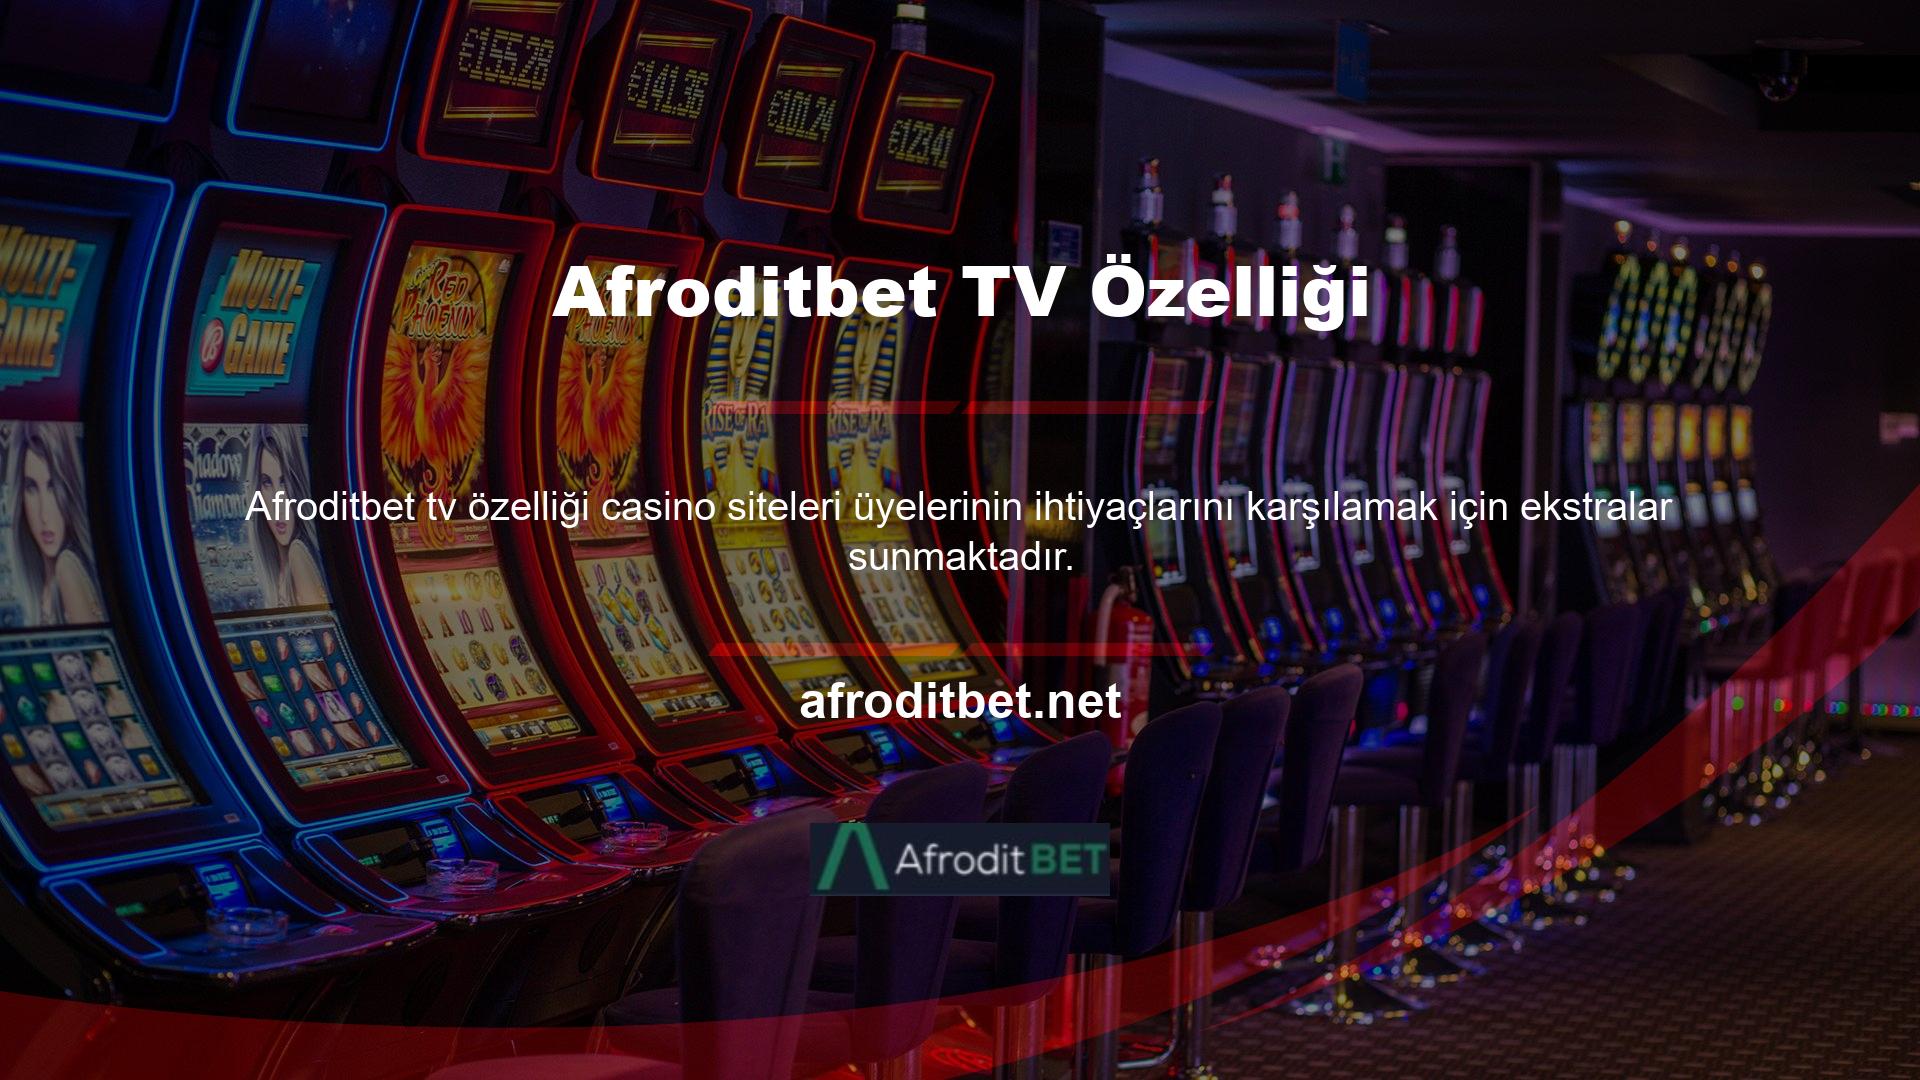 Afroditbet TV ile dilediğiniz maçı ücretsiz olarak izleyebilirsiniz